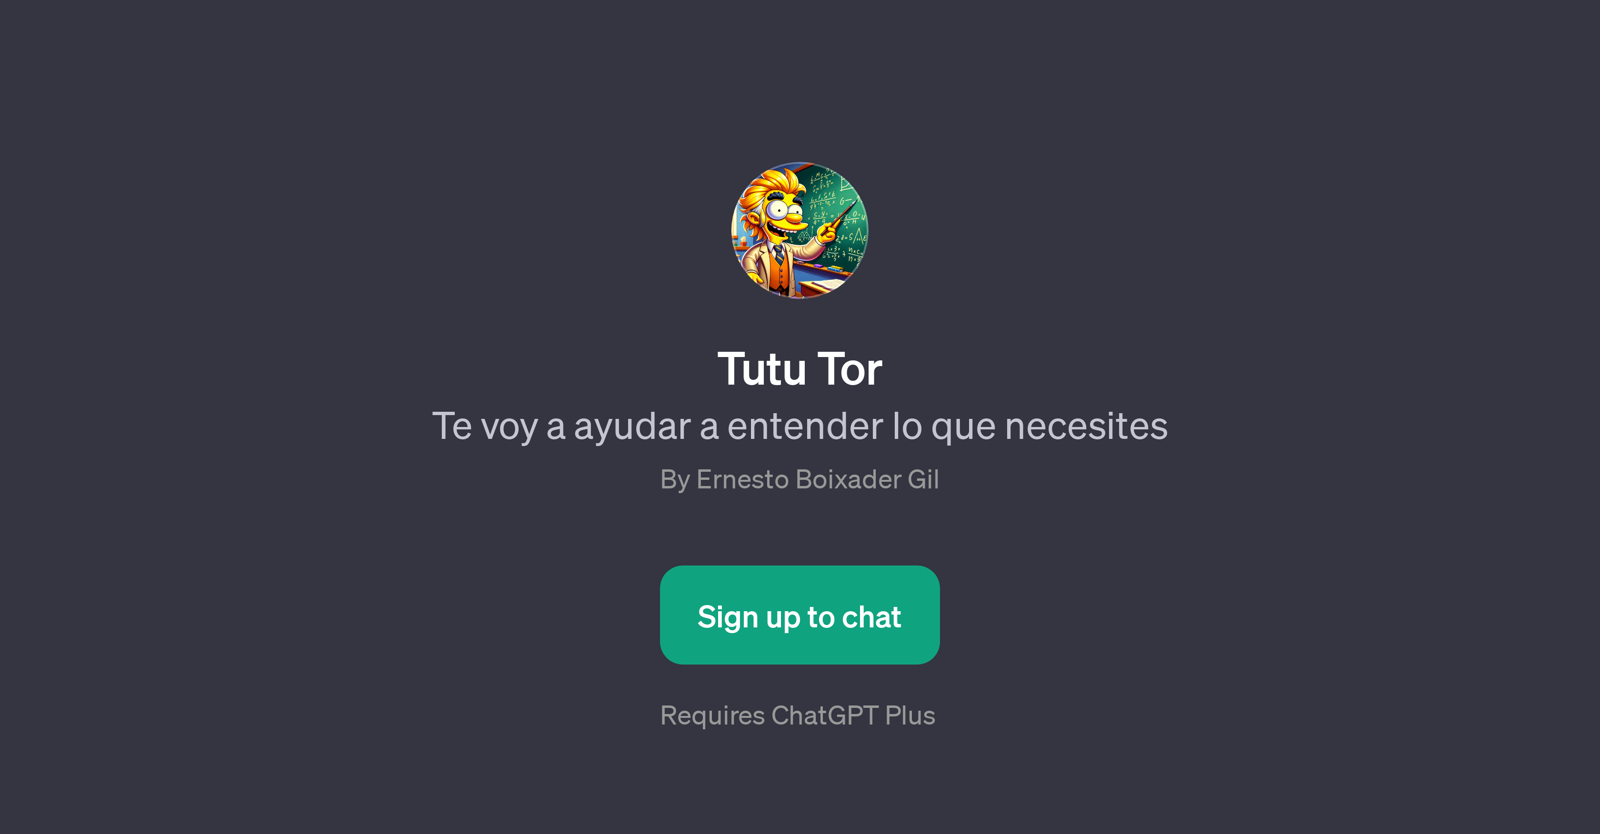 Tutu Tor website